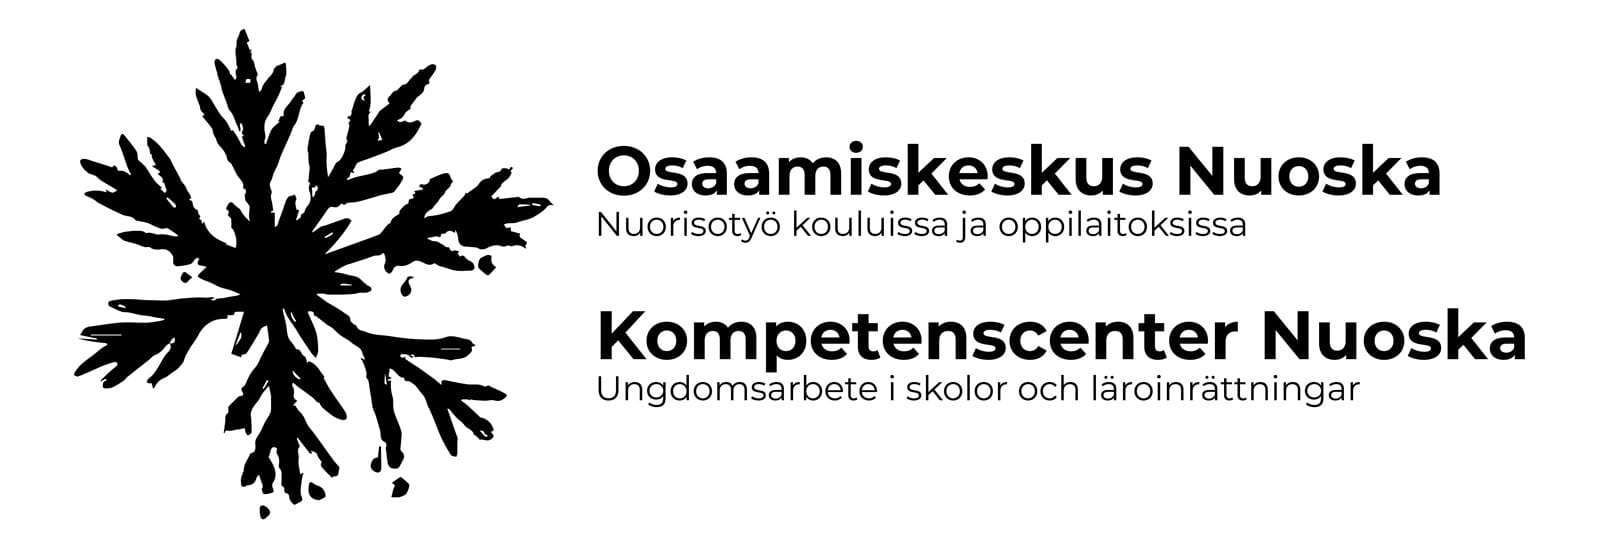 Nuoskan logo. Osaamiskeskus Nuoska - Nuorisotyö kouluissa ja oppilaitoksissa. Kompetenscenter Nuoska - ungdomsarbete i skolor och läroinrättningar.